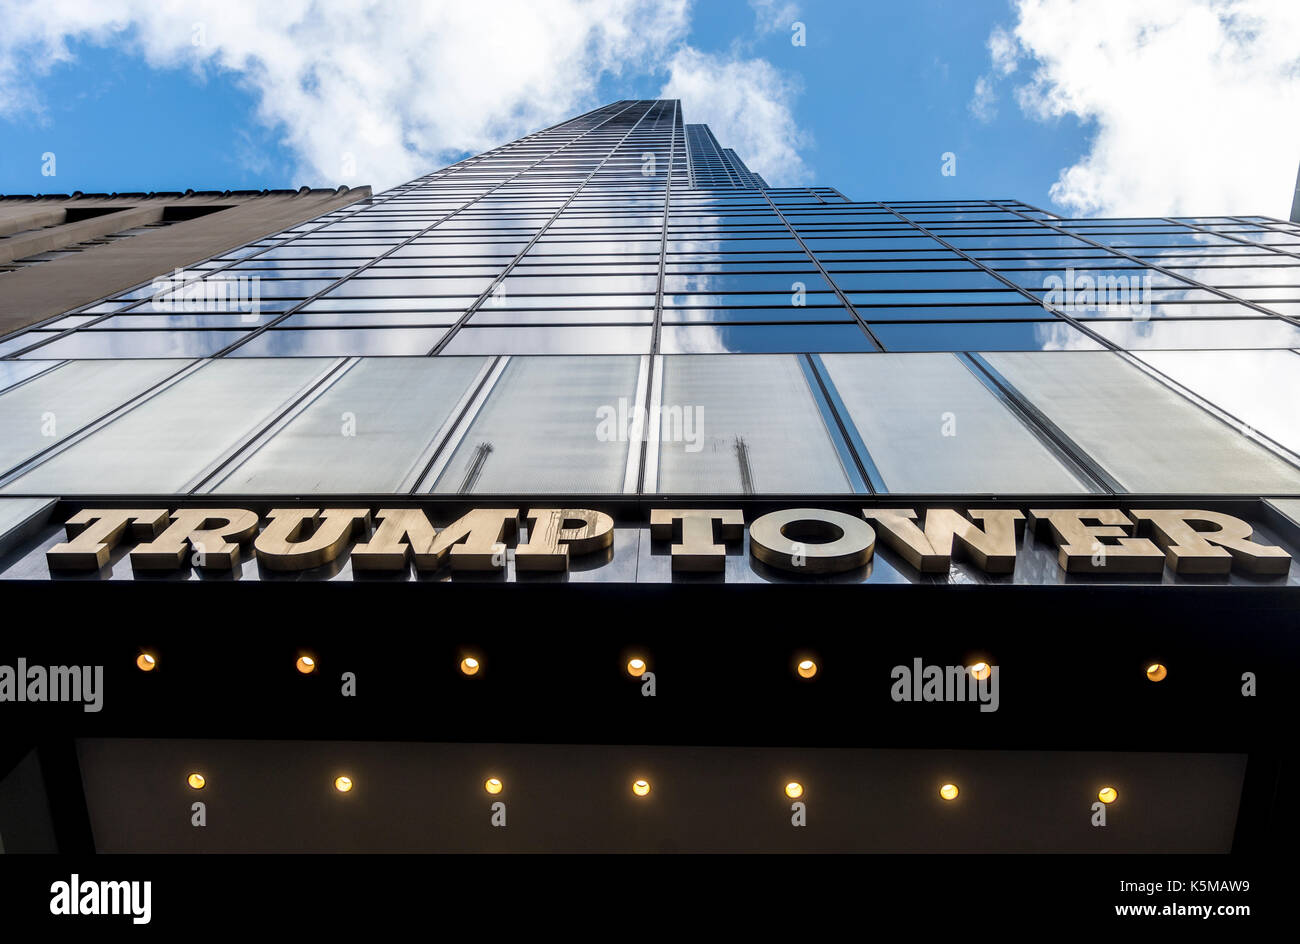 New York, NY, USA 9 septembre 2017 - Trump Tower, ta 68 étages, 664 mètres de haut (202 m) gratte-ciel à usage mixte situé à 721-725 Cinquième avenue, entre les 56e et 57e rue à Manhattan. Trump Tower est le siège de l'organisation et de l'atout est la résidence de new york le président américain Donald Trump, la tour comprend les magasins niketown et occupe le site de la chaîne des grands magasins Bonwit Teller était auparavant situé à. ©stacy walsh rosenstock/Alamy Banque D'Images